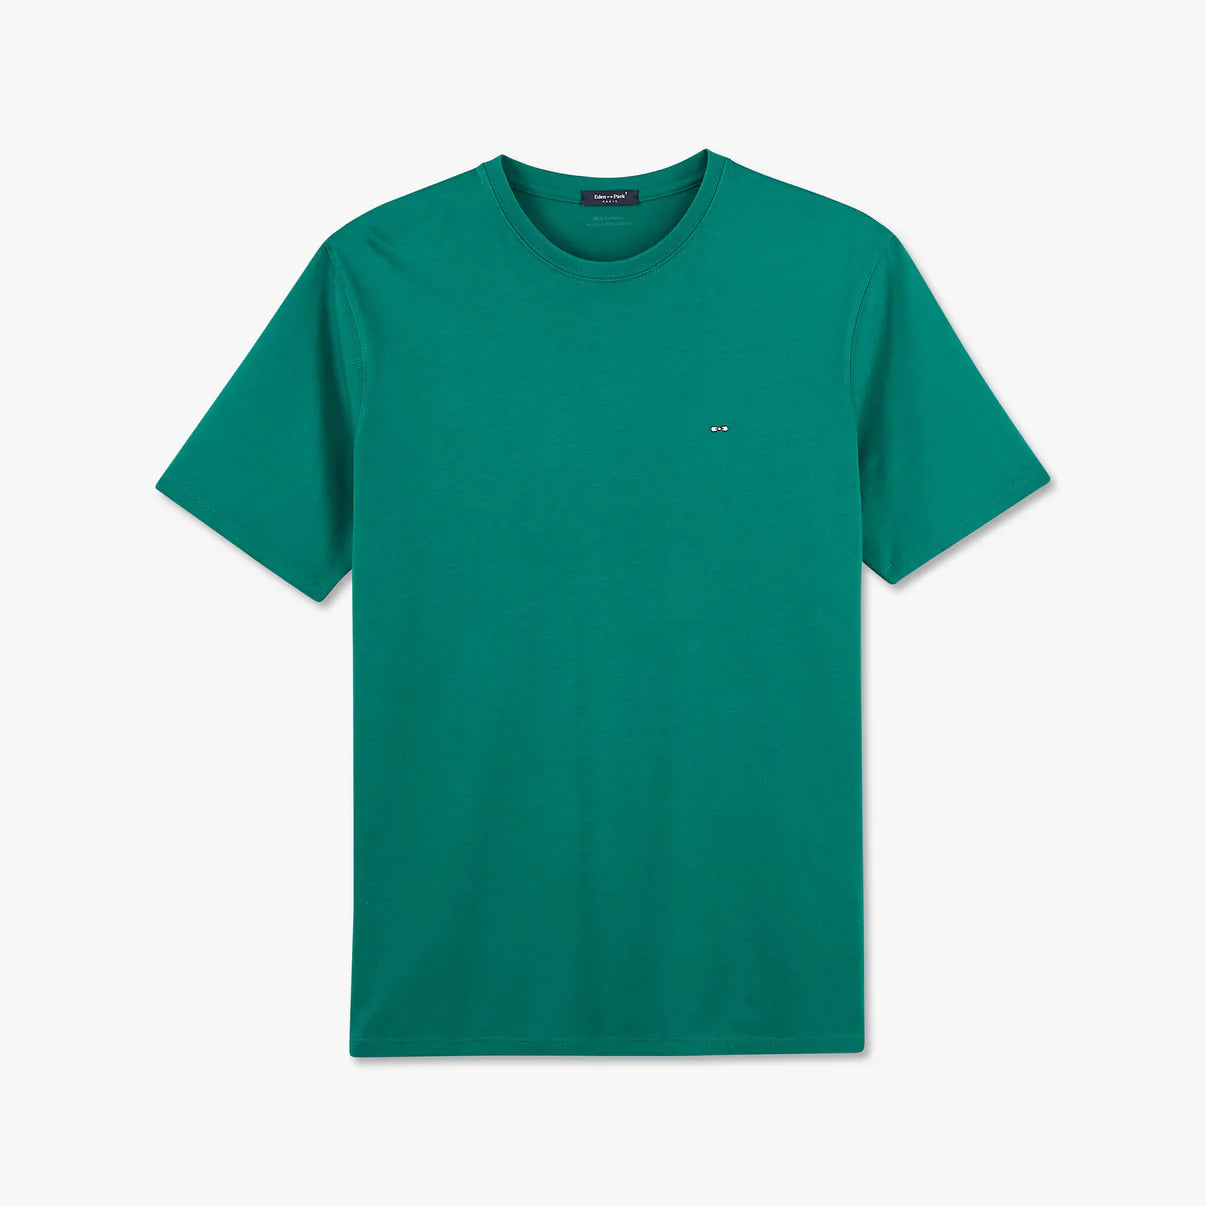 Eden Park grünes Baumwoll-T-Shirt